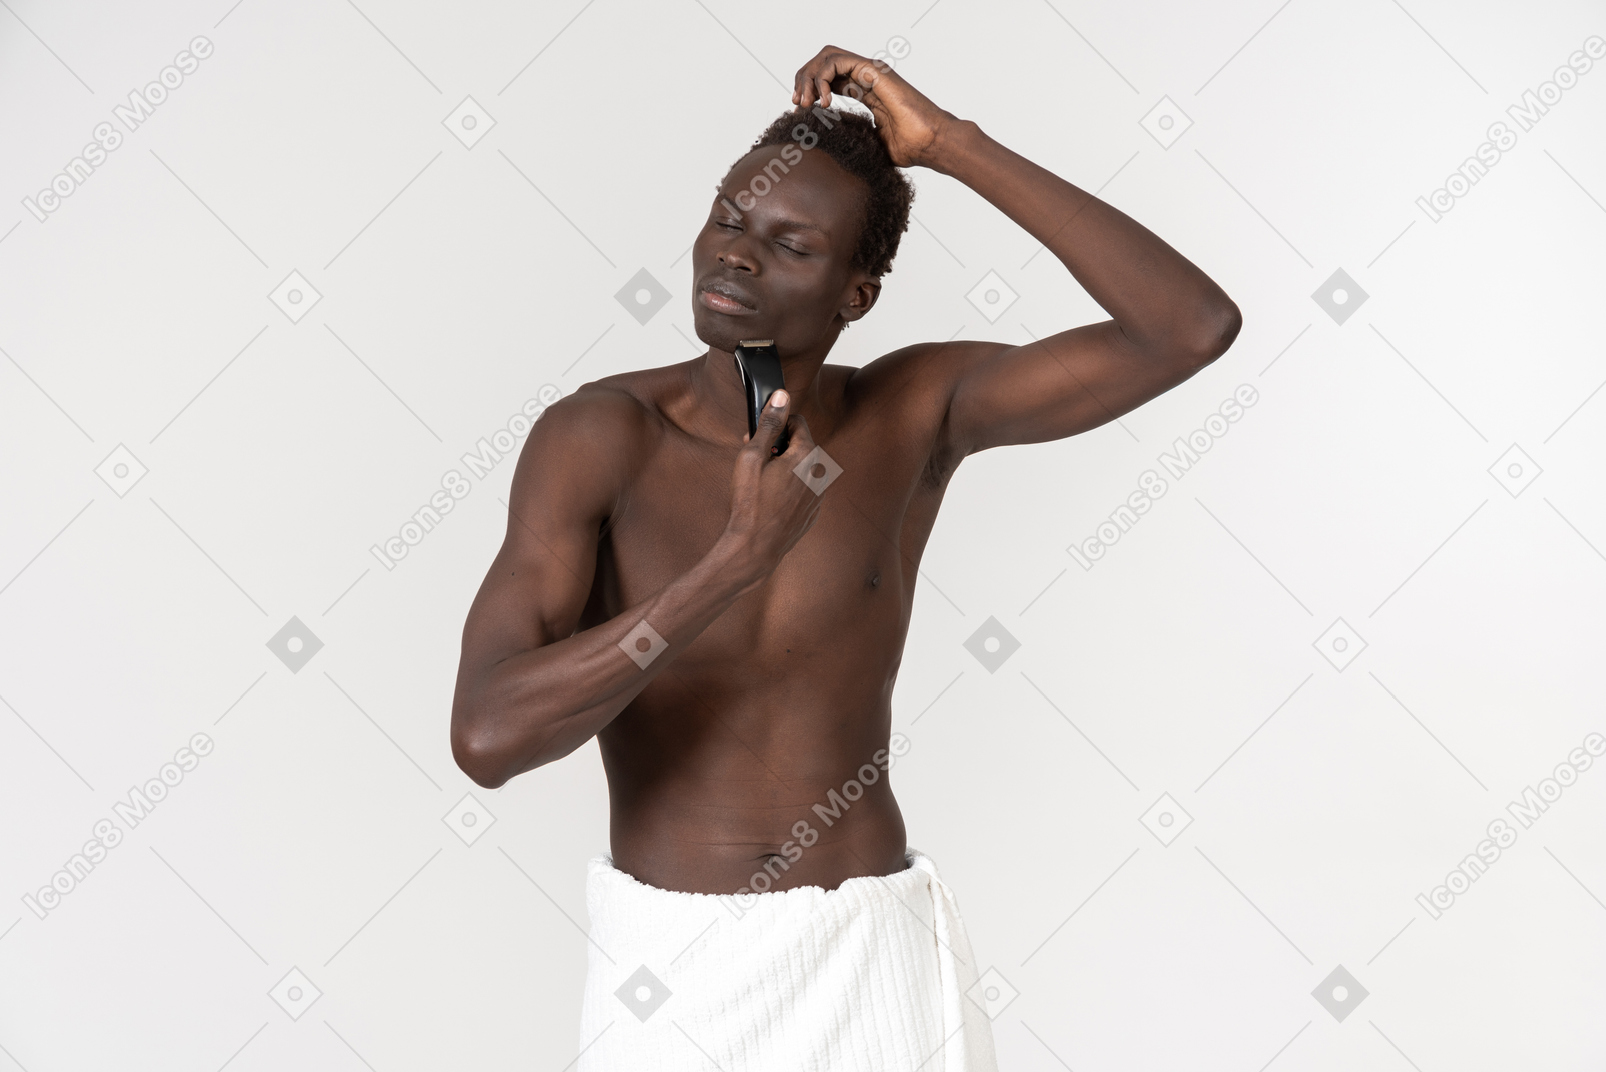 Темнокожий мужчина с белым банным полотенцем на талии делает утреннюю рутину